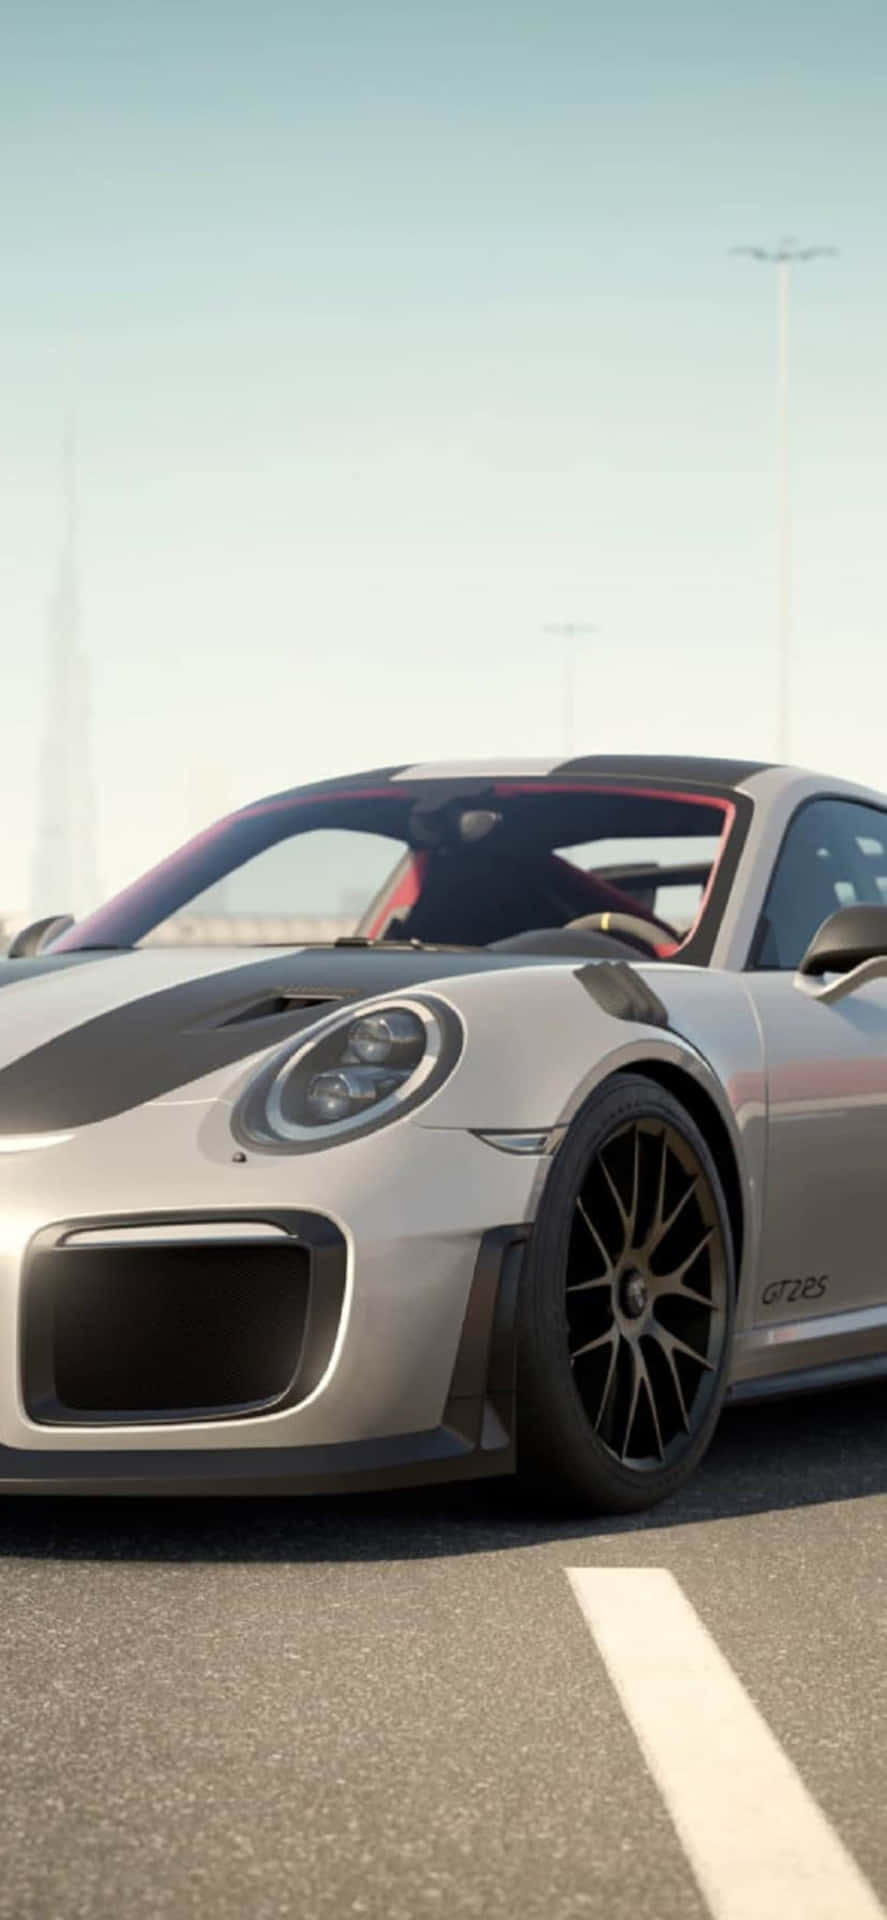 Porsche 911 iPhone X Forza Motorsport 7 Background